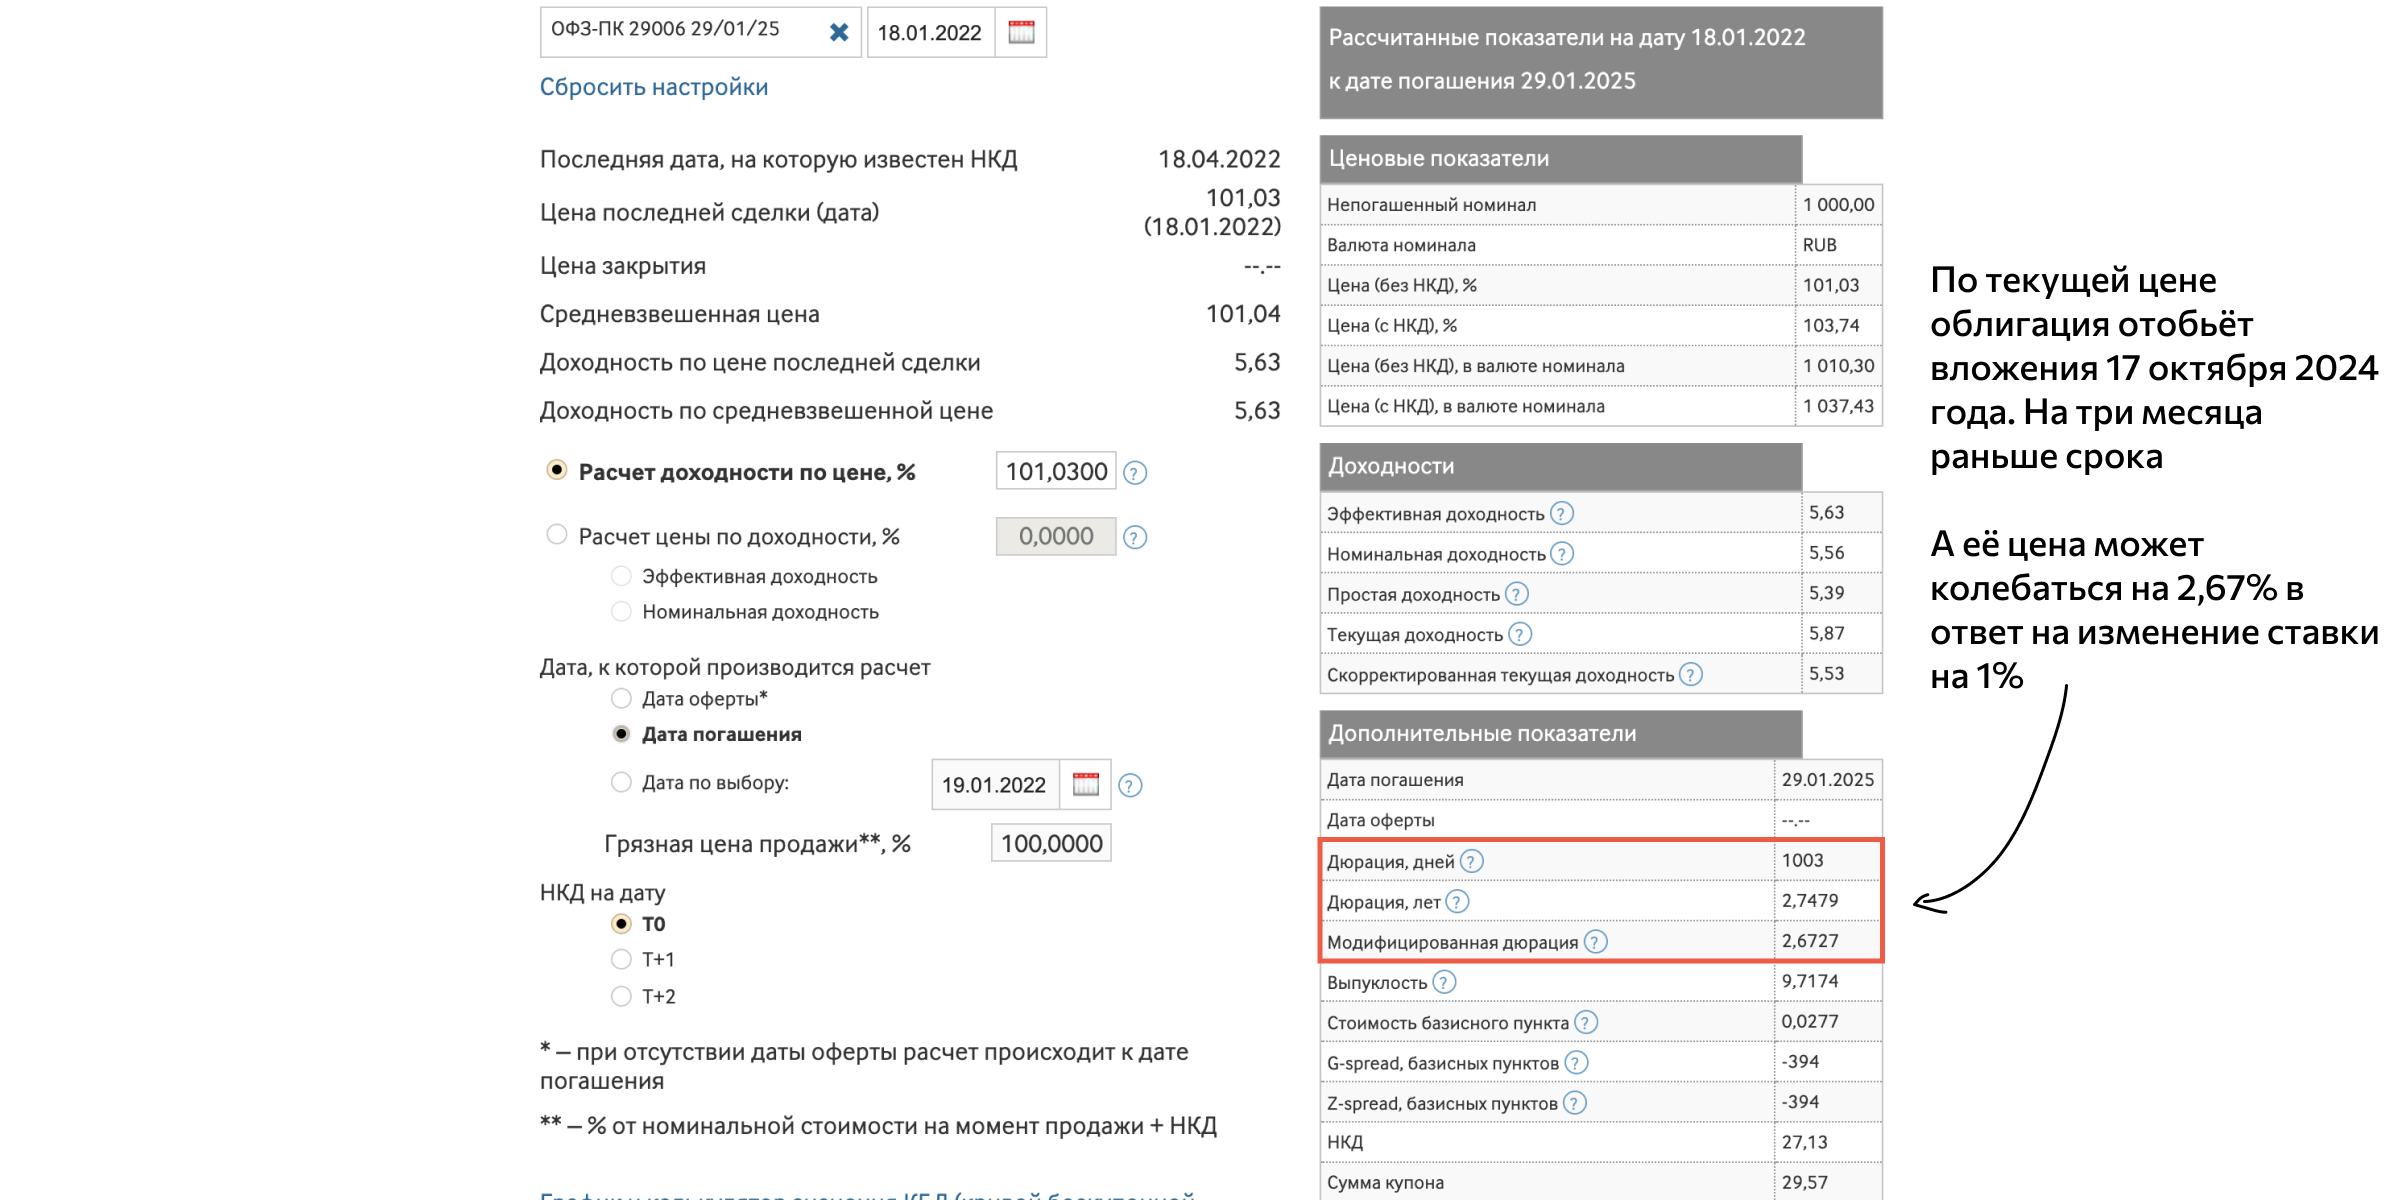 Дюрация облигации: расчёт в калькуляторе на сайте Мосбиржи